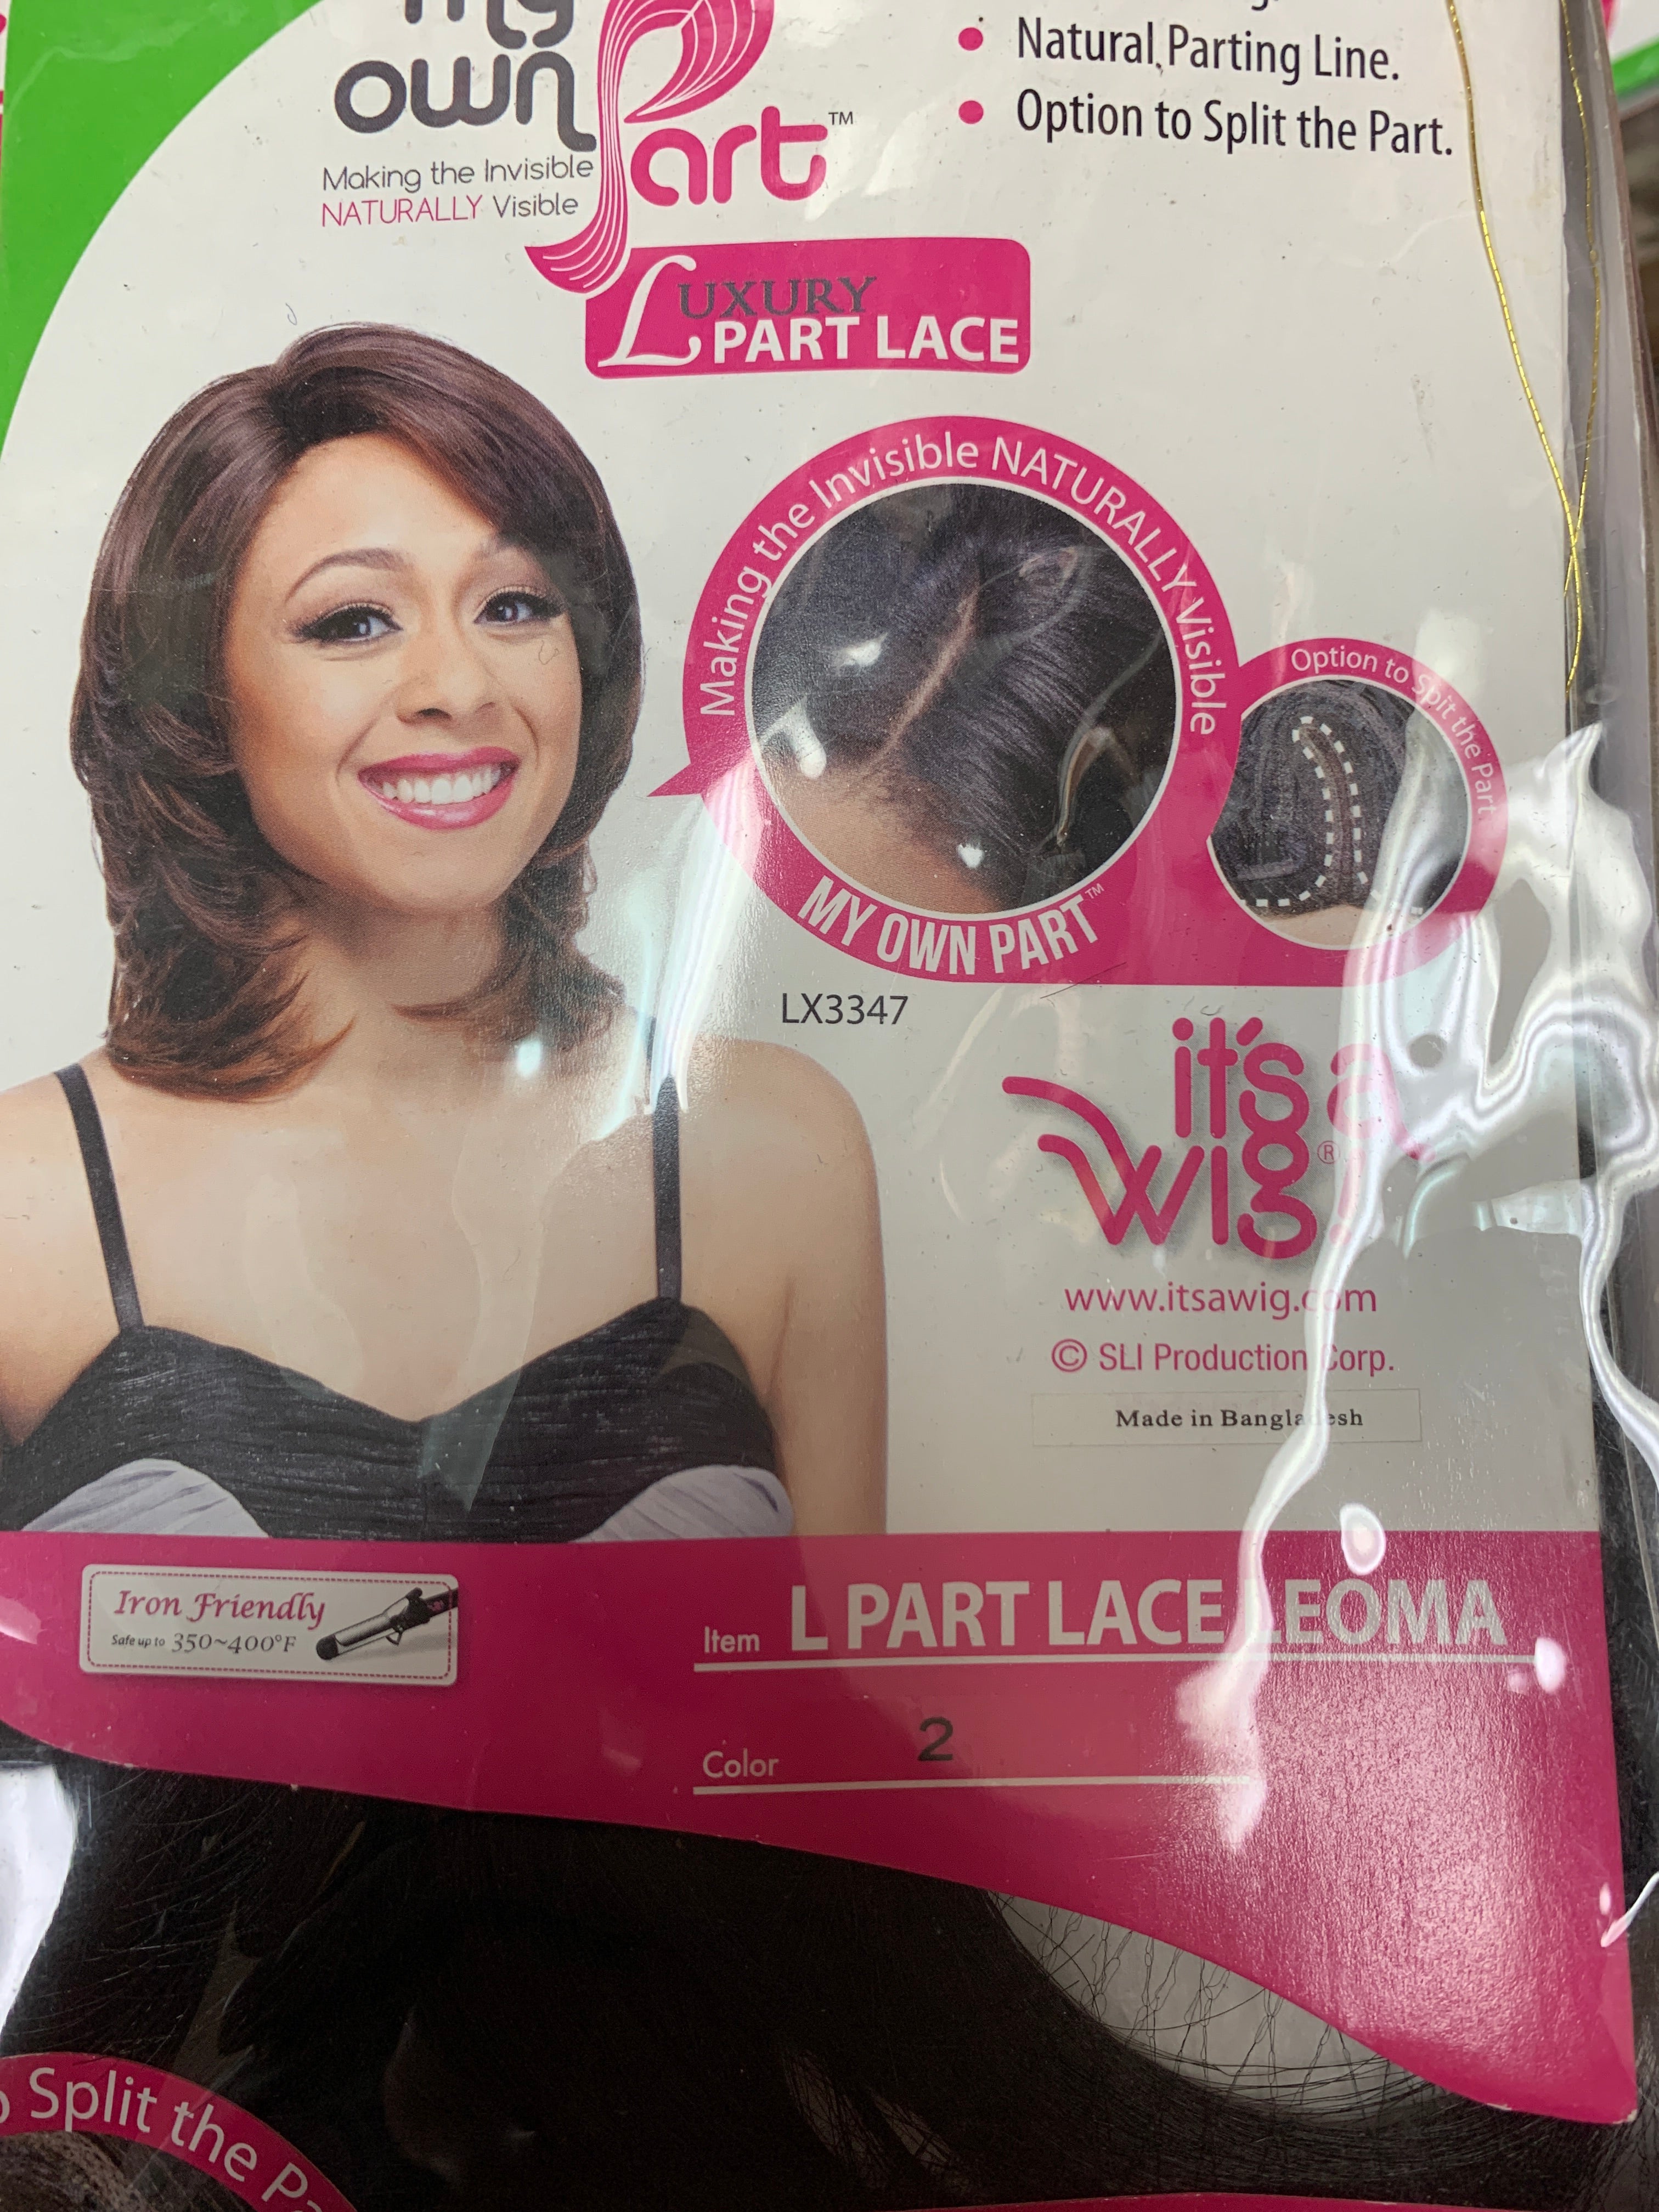 It’s a wig L part lace Leoma